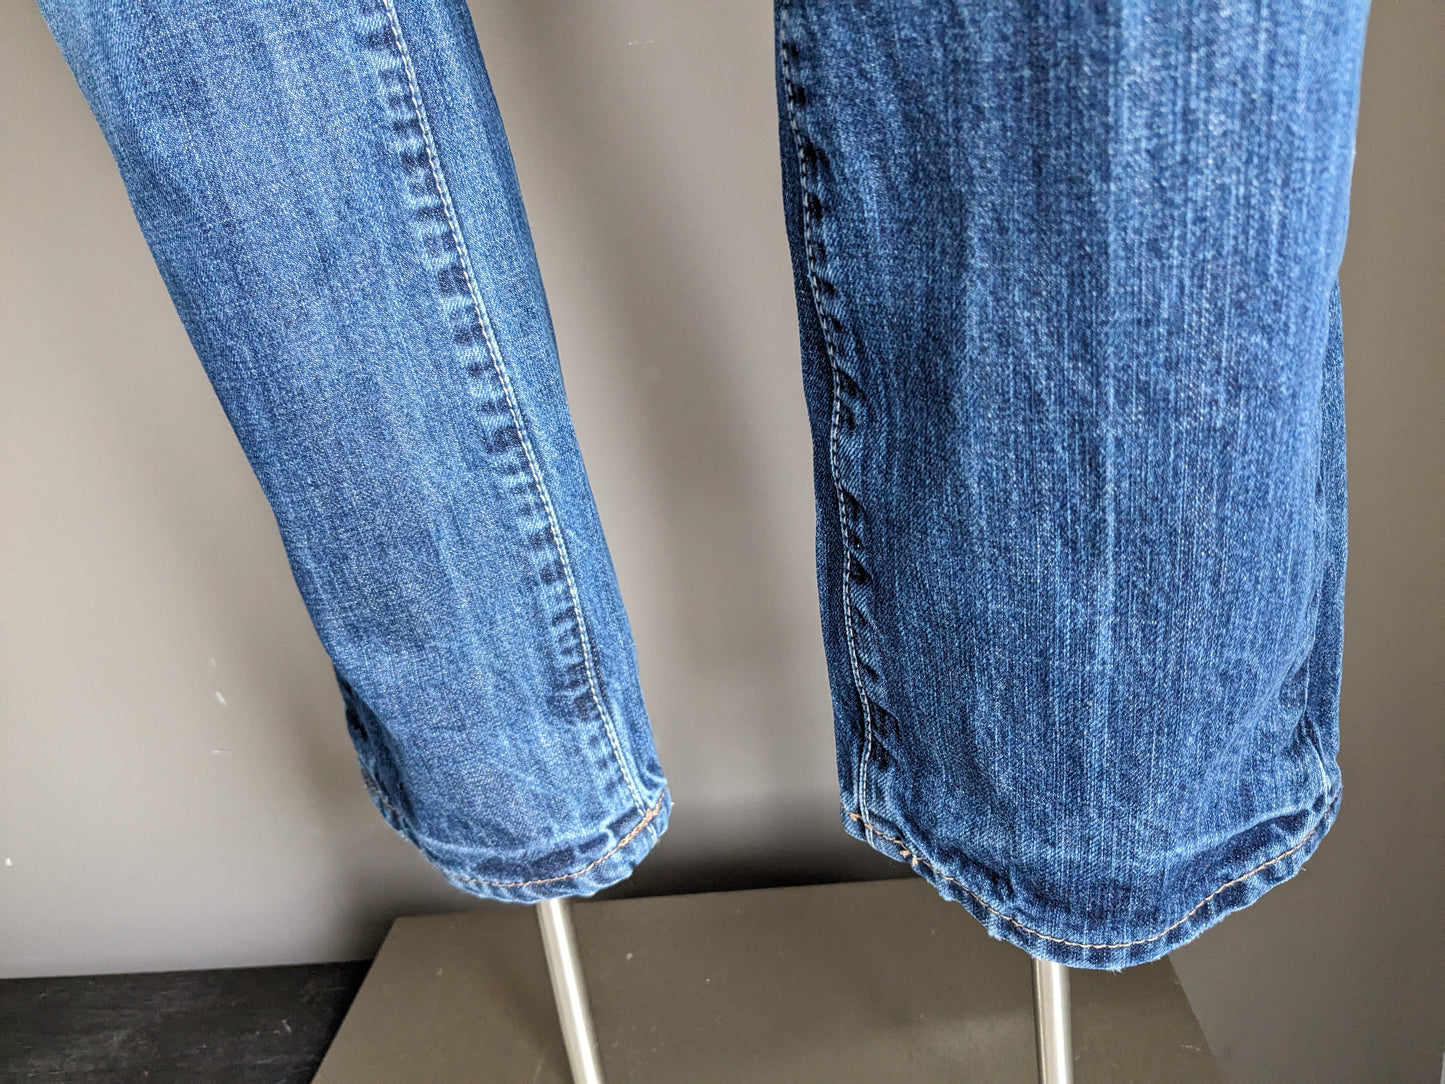 Jeans Tommy Hilfiger. Couleur bleue. Taille W29 - L32. Tapez Rogar. Ajustement régulier.